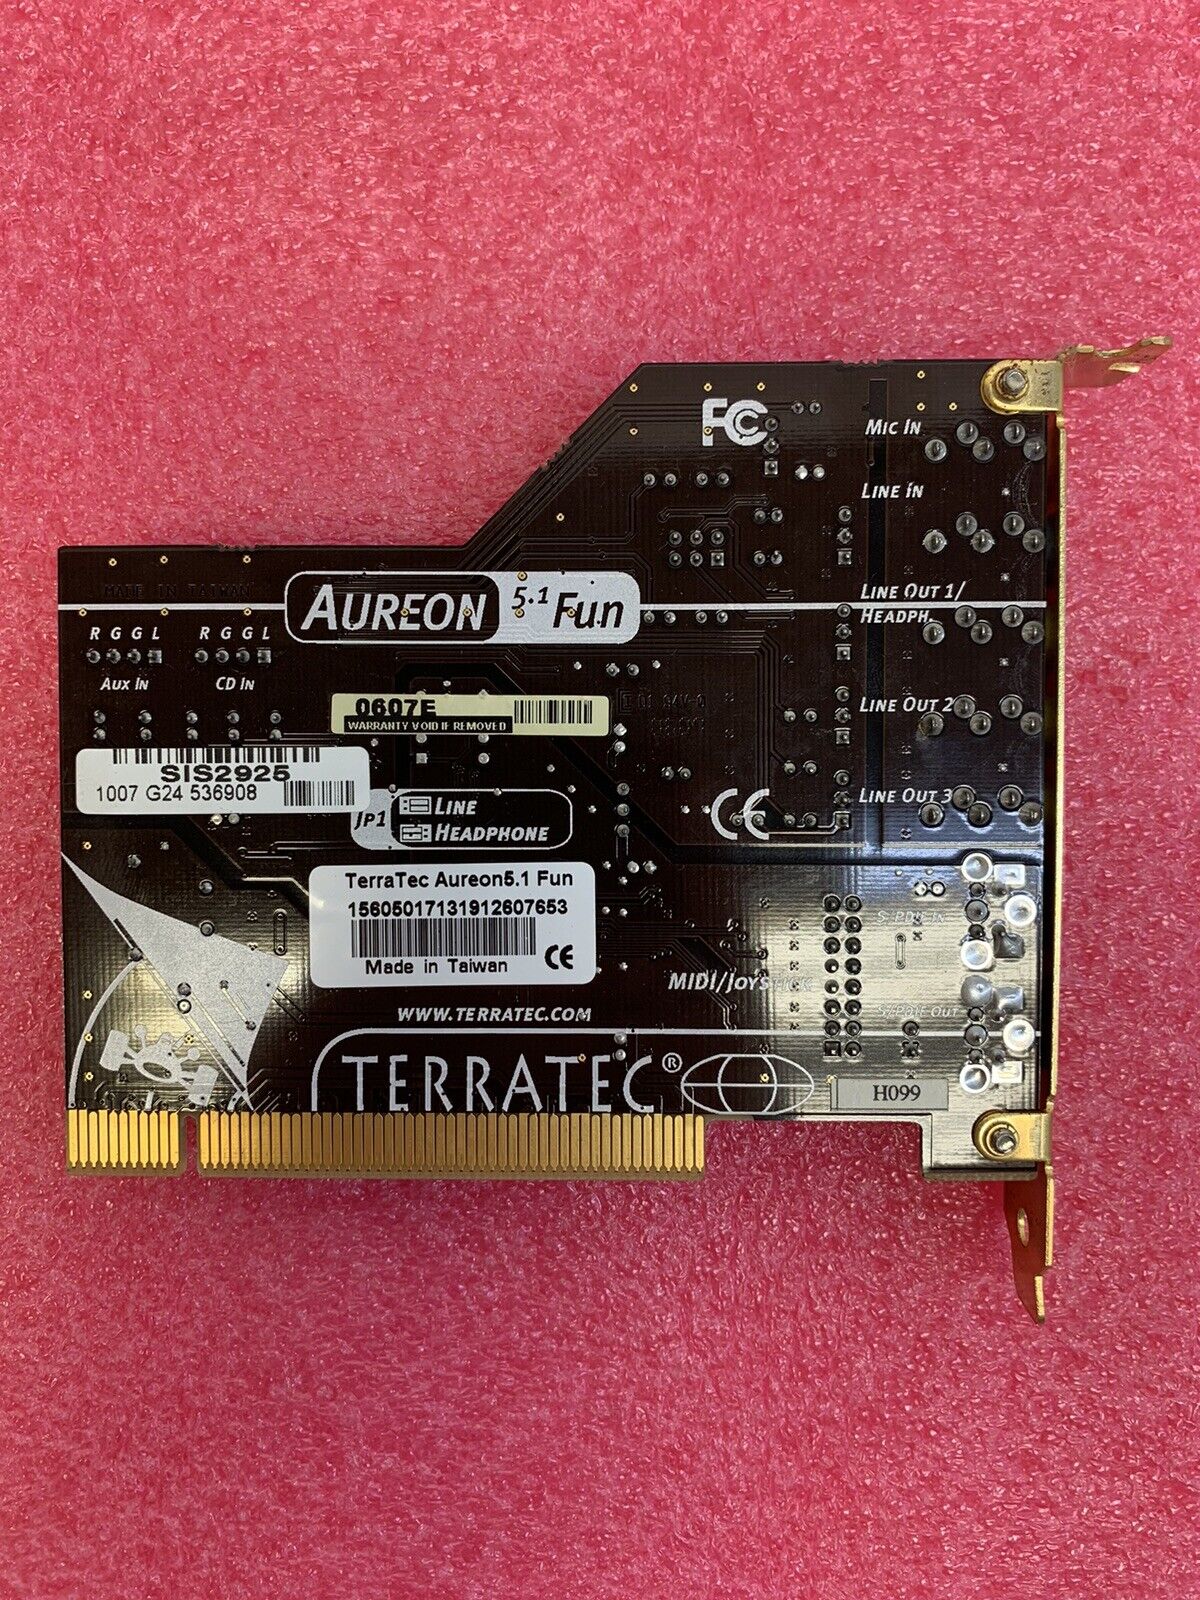 TerraTec Aureon 5.1 Fun Audio Card